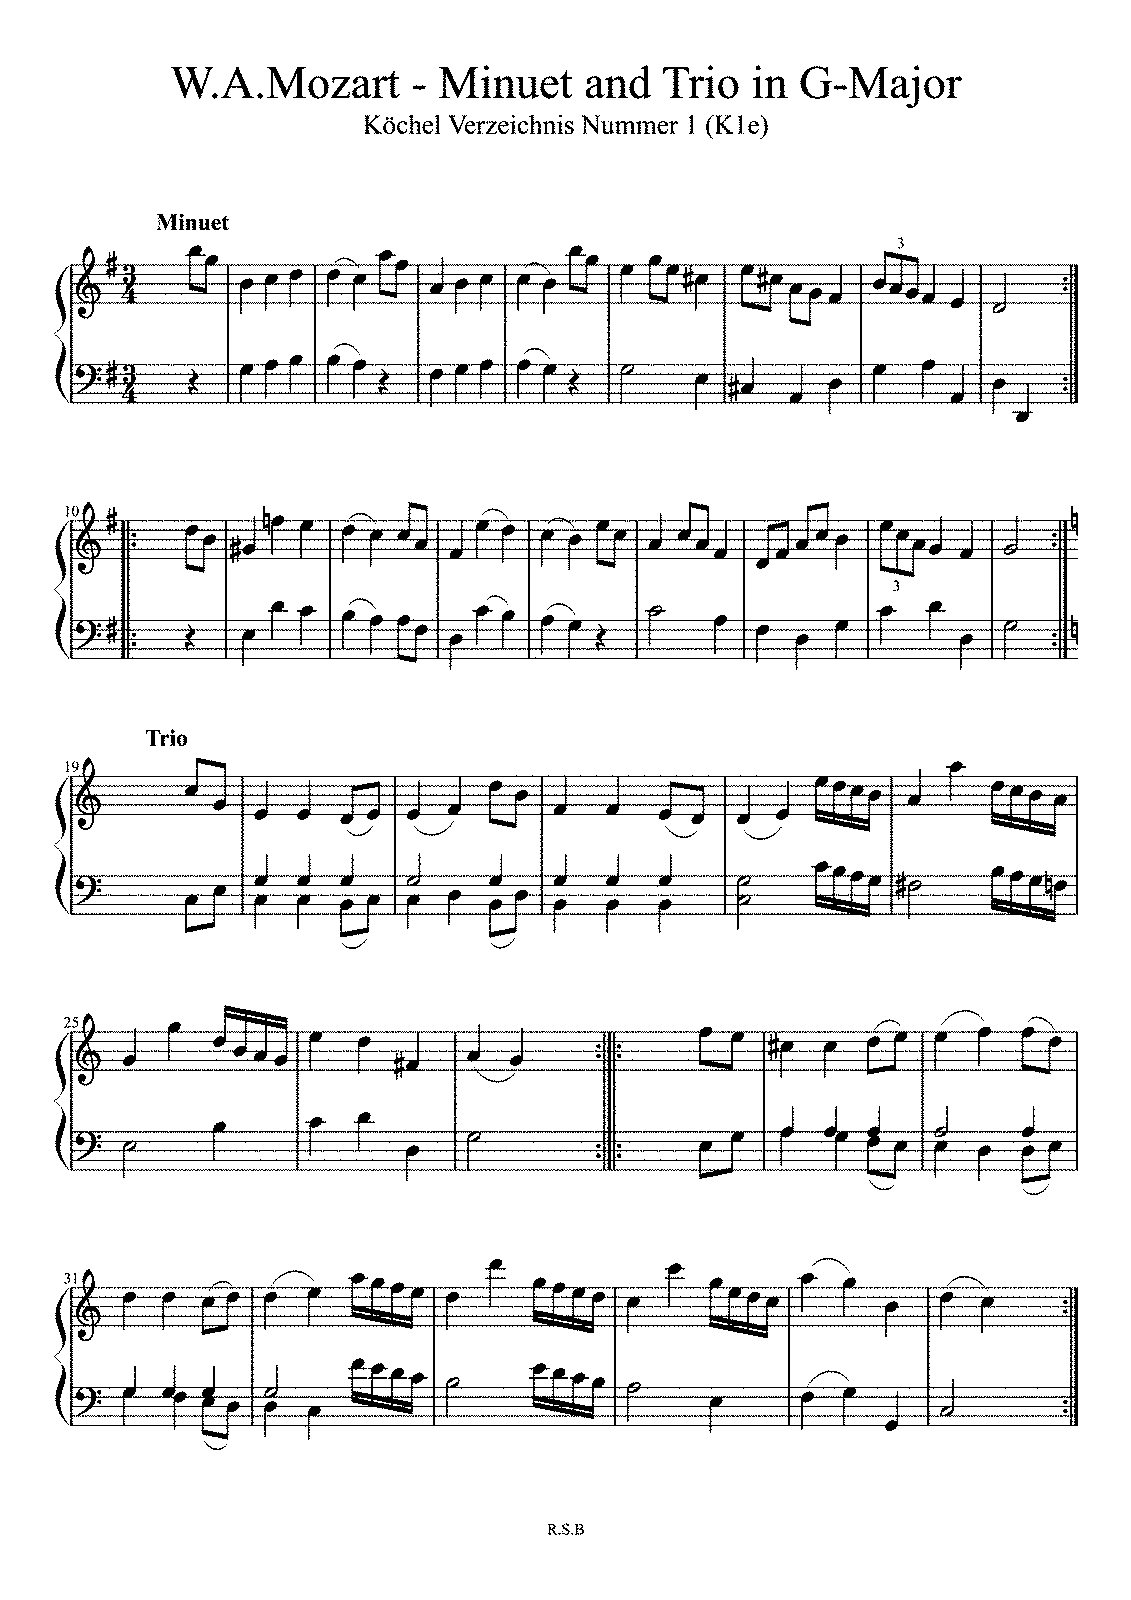 Minuet in G major, K.1/1e (Mozart, Wolfgang Amadeus